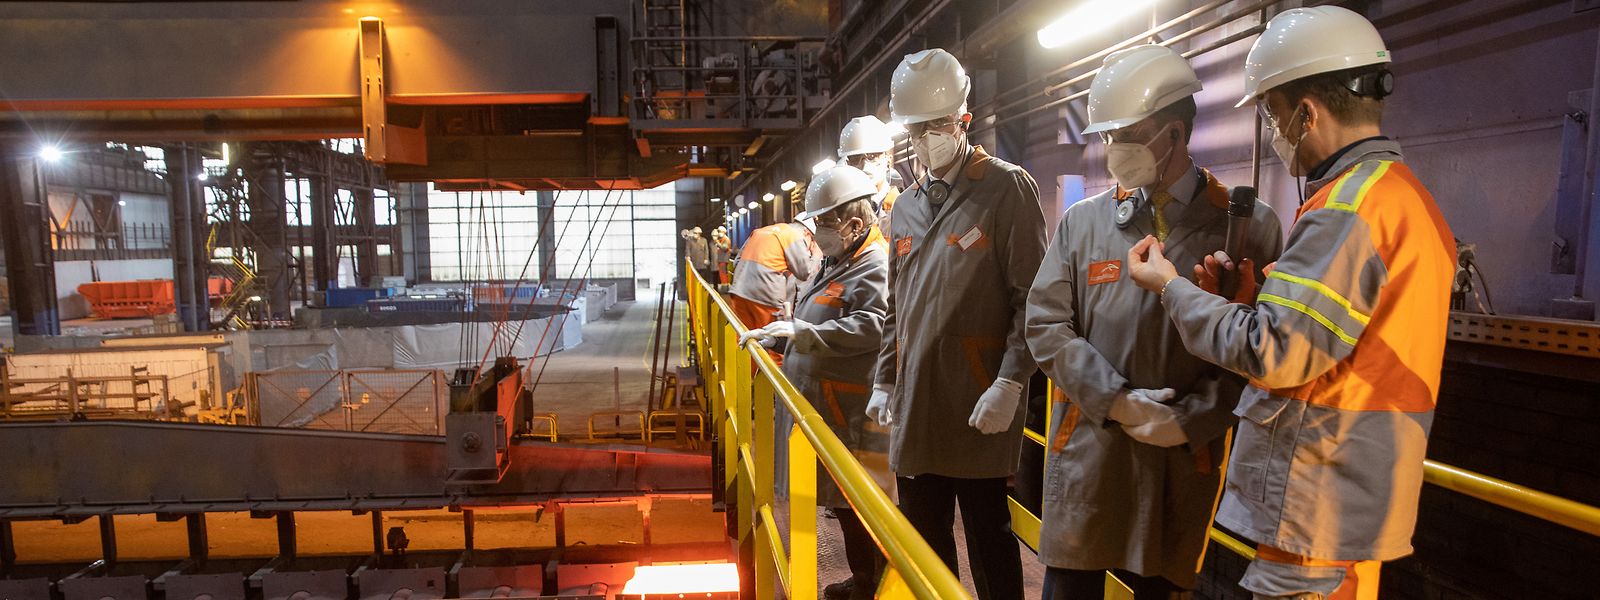 ArcelorMittal a perdu 240 emplois en douze mois, entre 2020 et 2021. La chute d'effectifs la plus spectaculaire au palmarès des grands employeurs du pays.